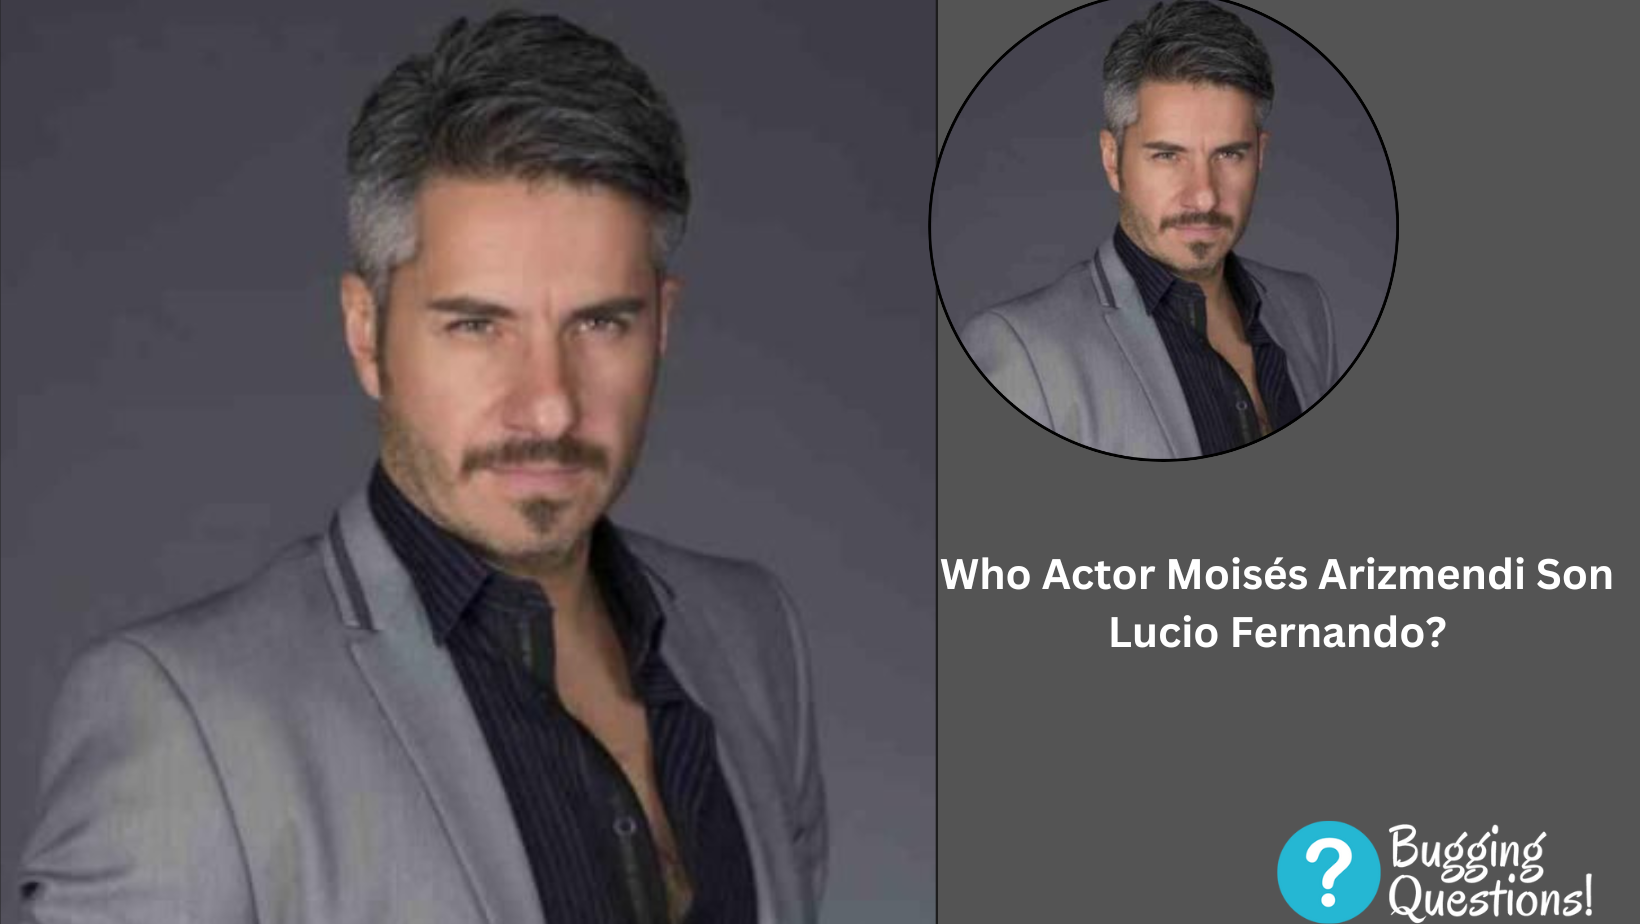 Who Actor Moisés Arizmendi Son Lucio Fernando?